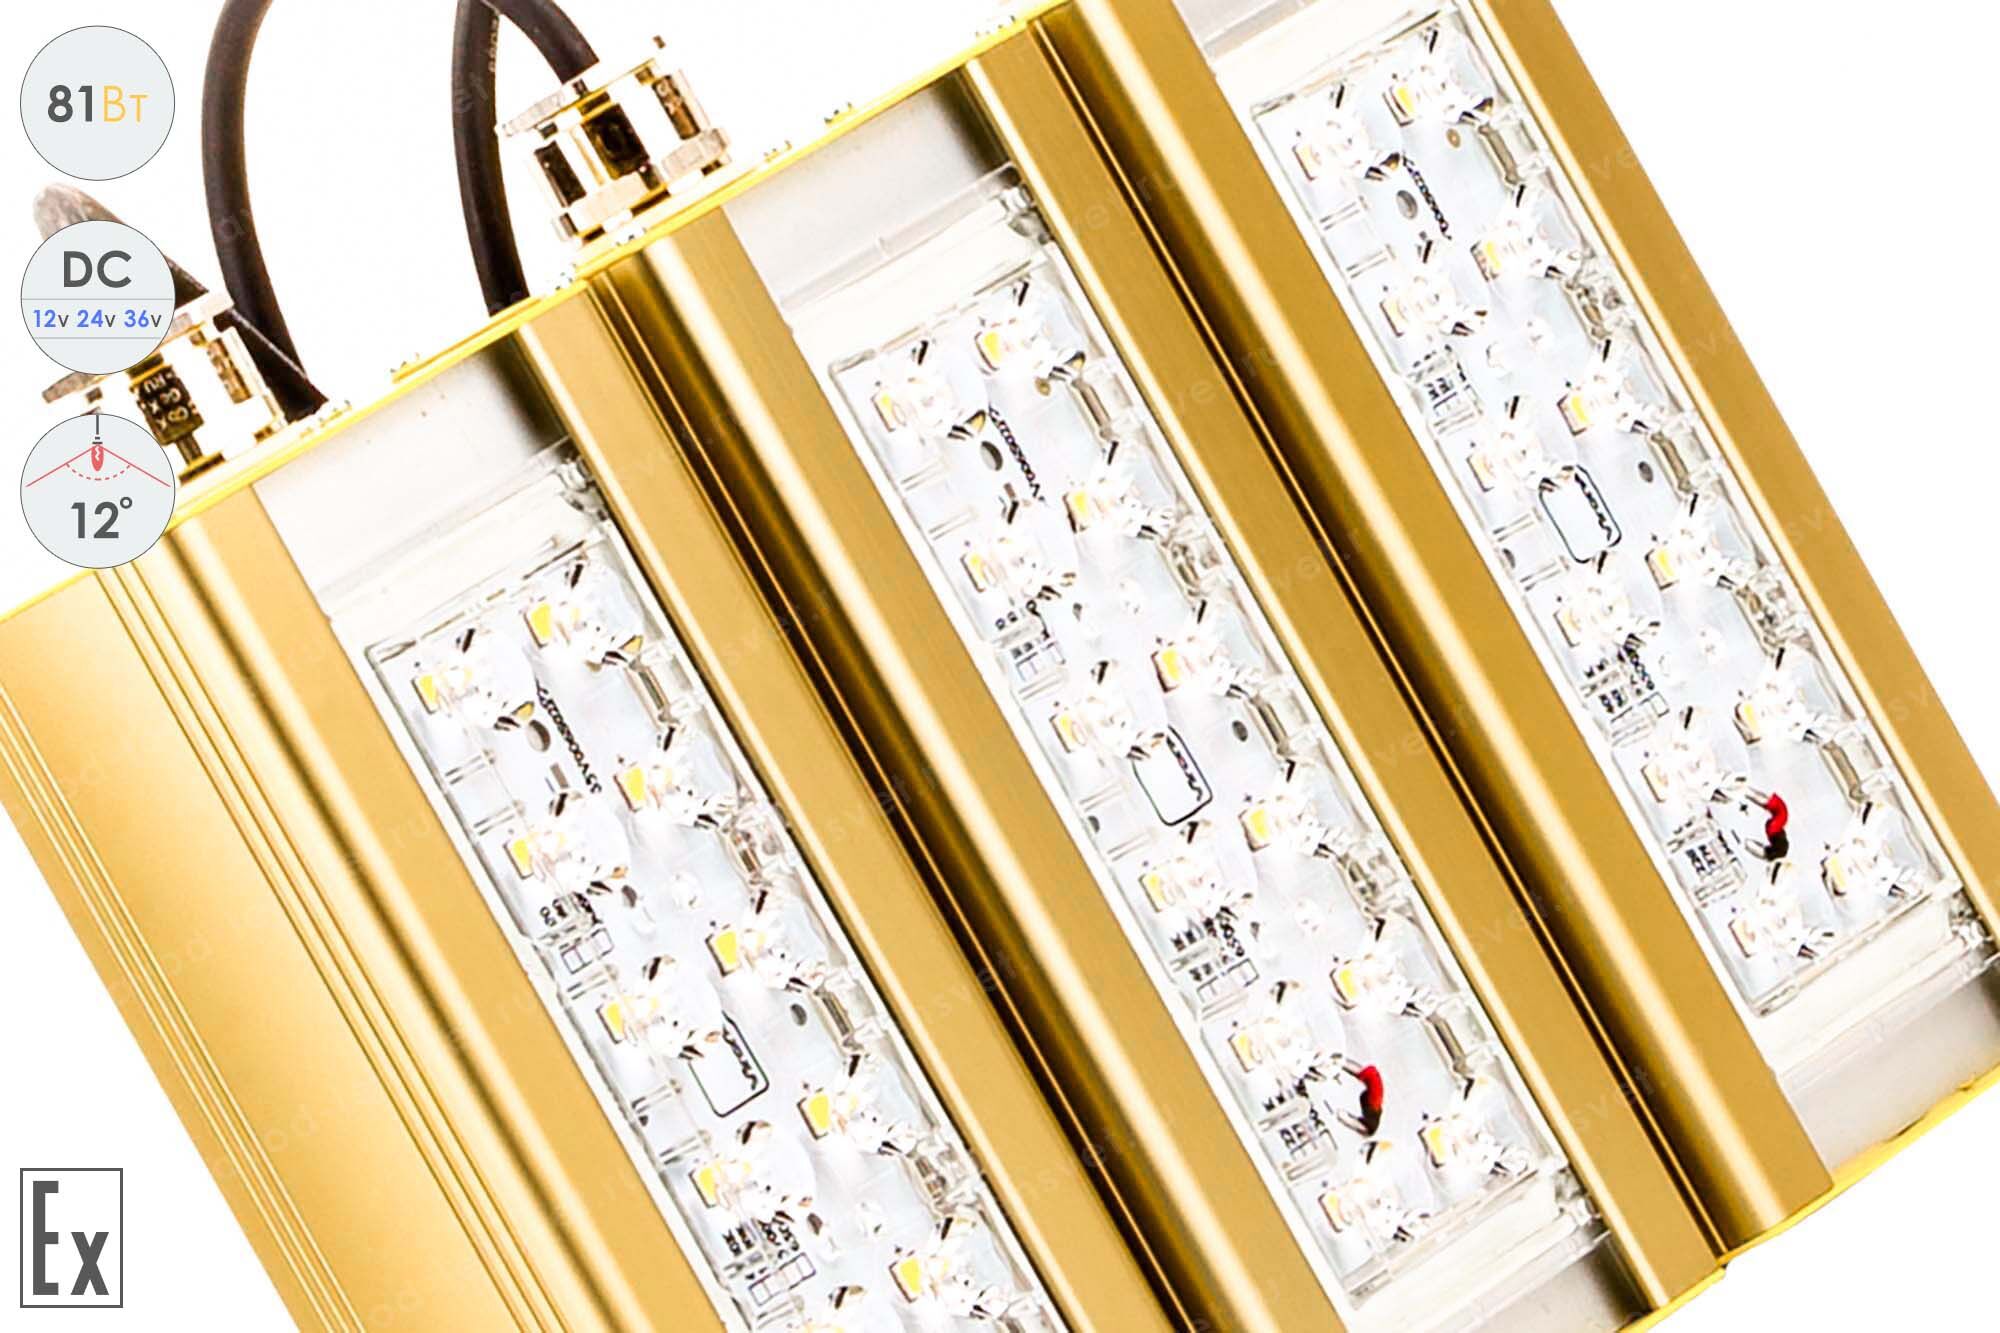 Низковольтный светодиодный светильник Прожектор Взрывозащищенный GOLD, консоль K-3 , 81 Вт, 12° 3